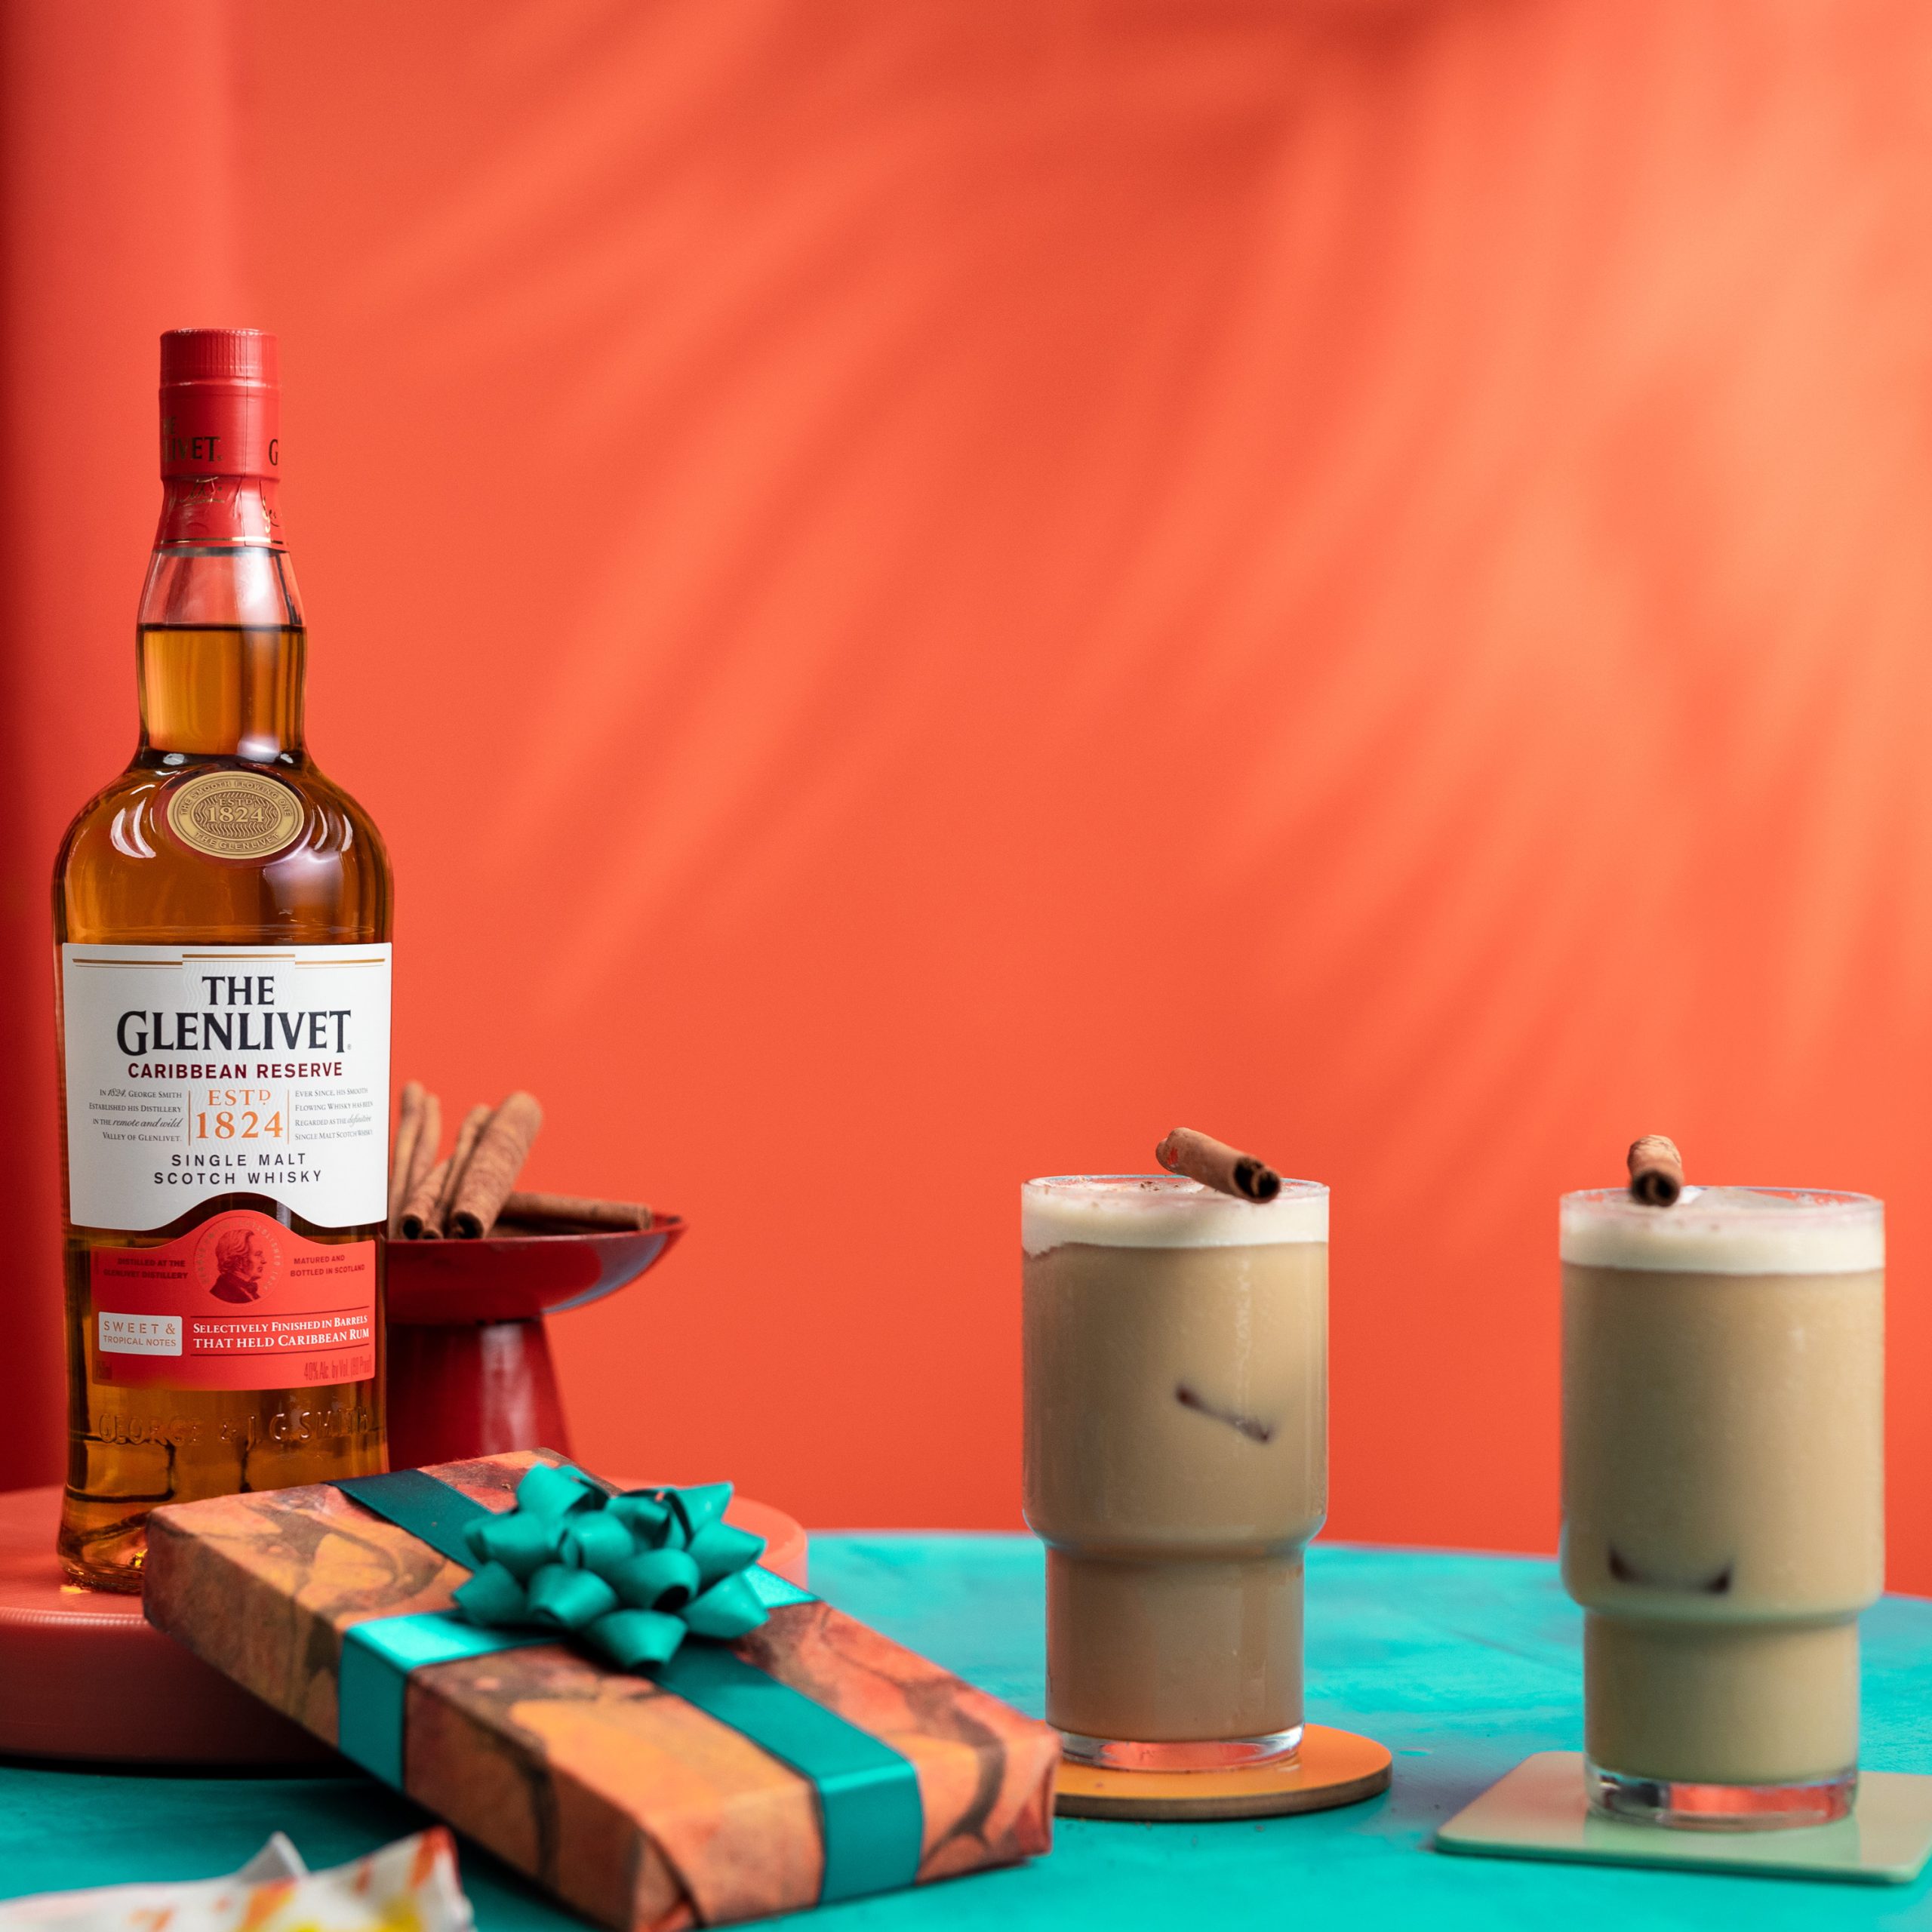 the glenlivet caribbiean reserve celebration coffee whisky cocktail gift